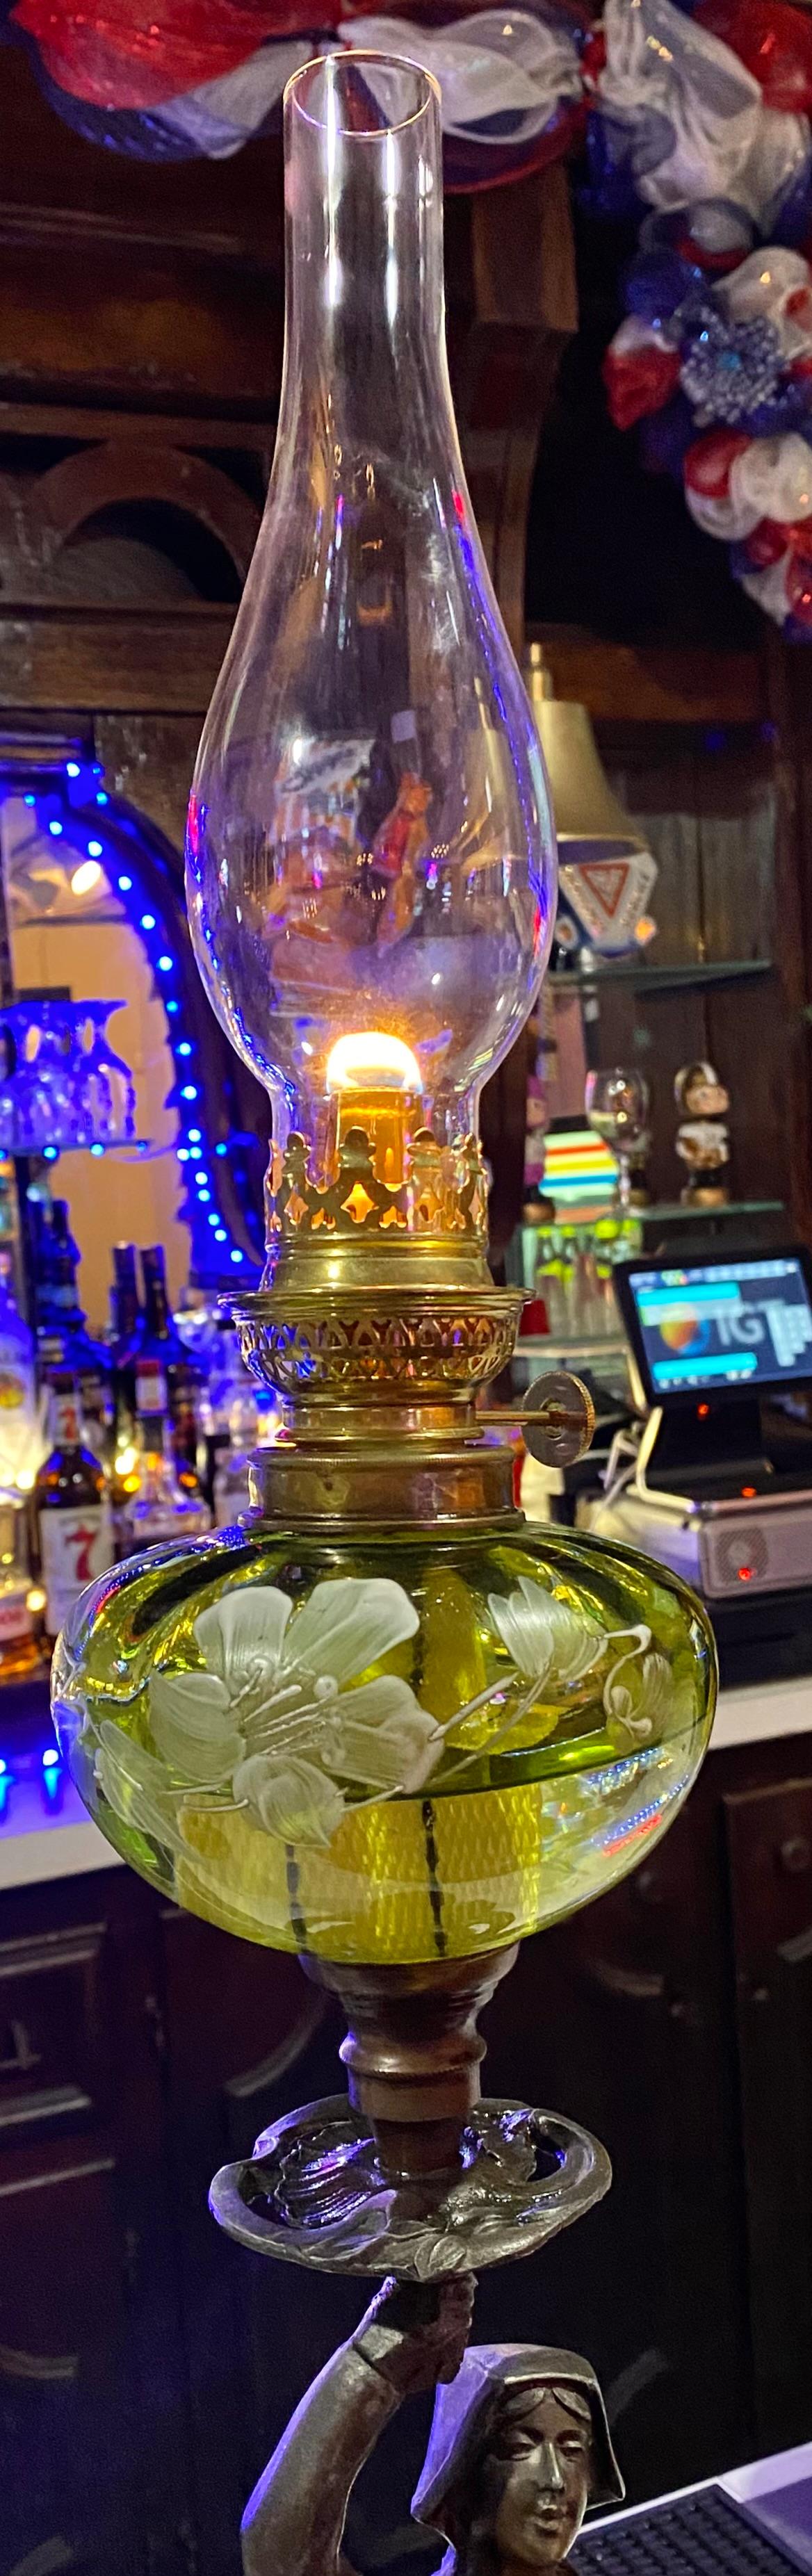 Antique French Art Nouveau Figural Oip Lamp For Sale 6